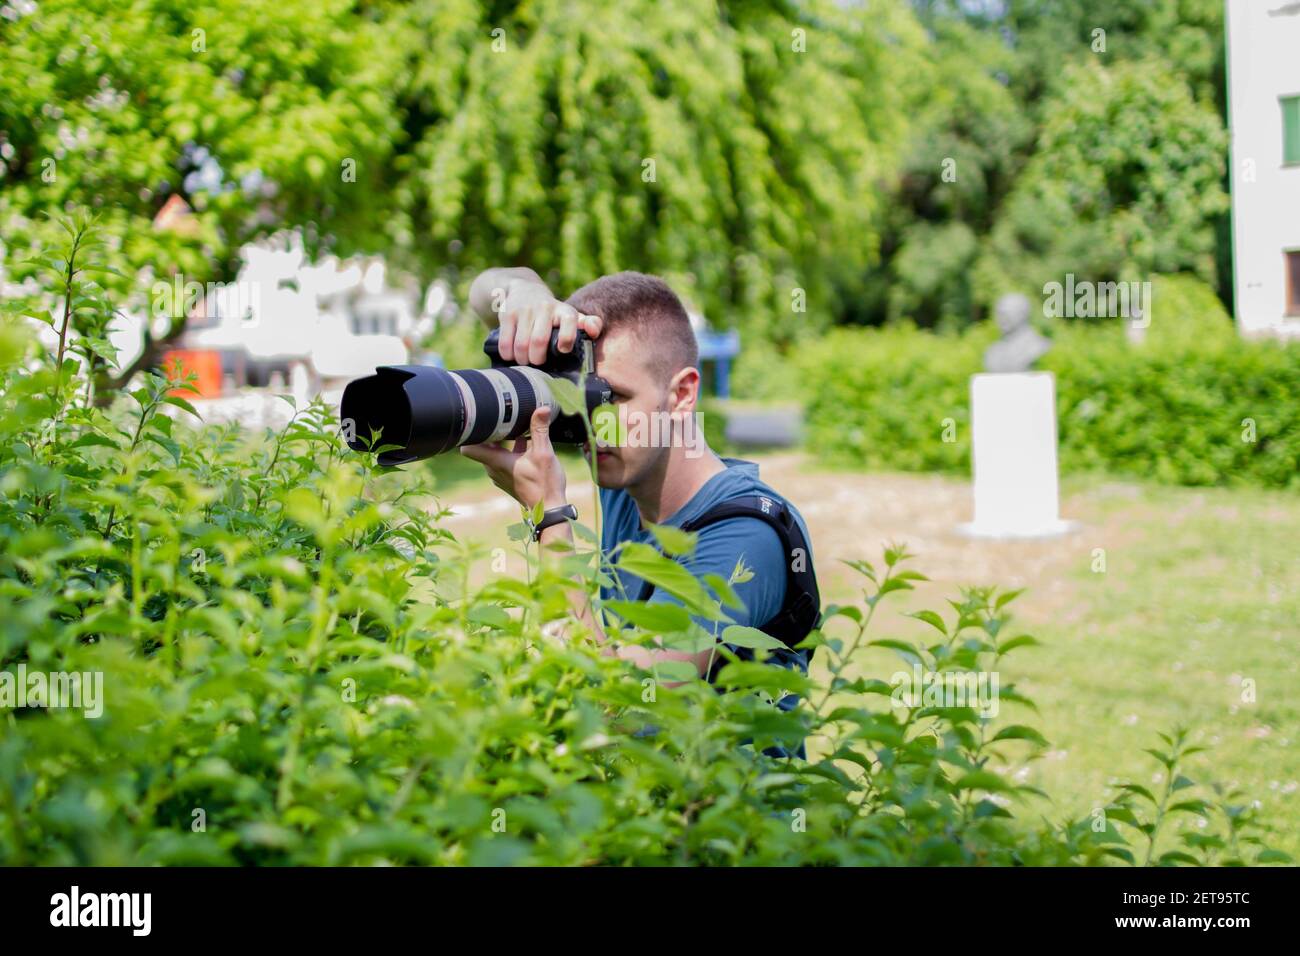 BRCKO, BOSNIEN UND HERZEGOWINA - 05. Jun 2017: Mann mit großer Canon Kamera und Objektiv hinter Busch Stockfoto